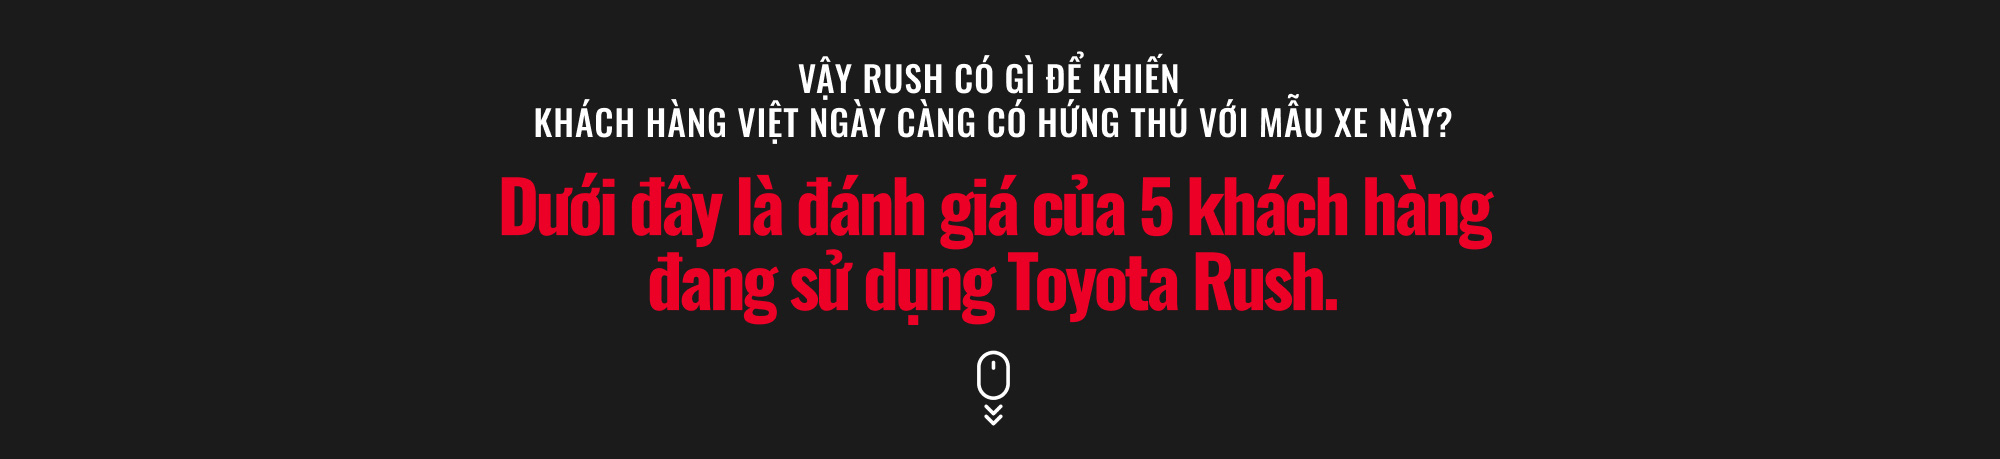 Loạt người dùng Toyota Rush: ‘Mua và trải nghiệm mới thấy rõ giá trị, không hối hận’ - Ảnh 3.